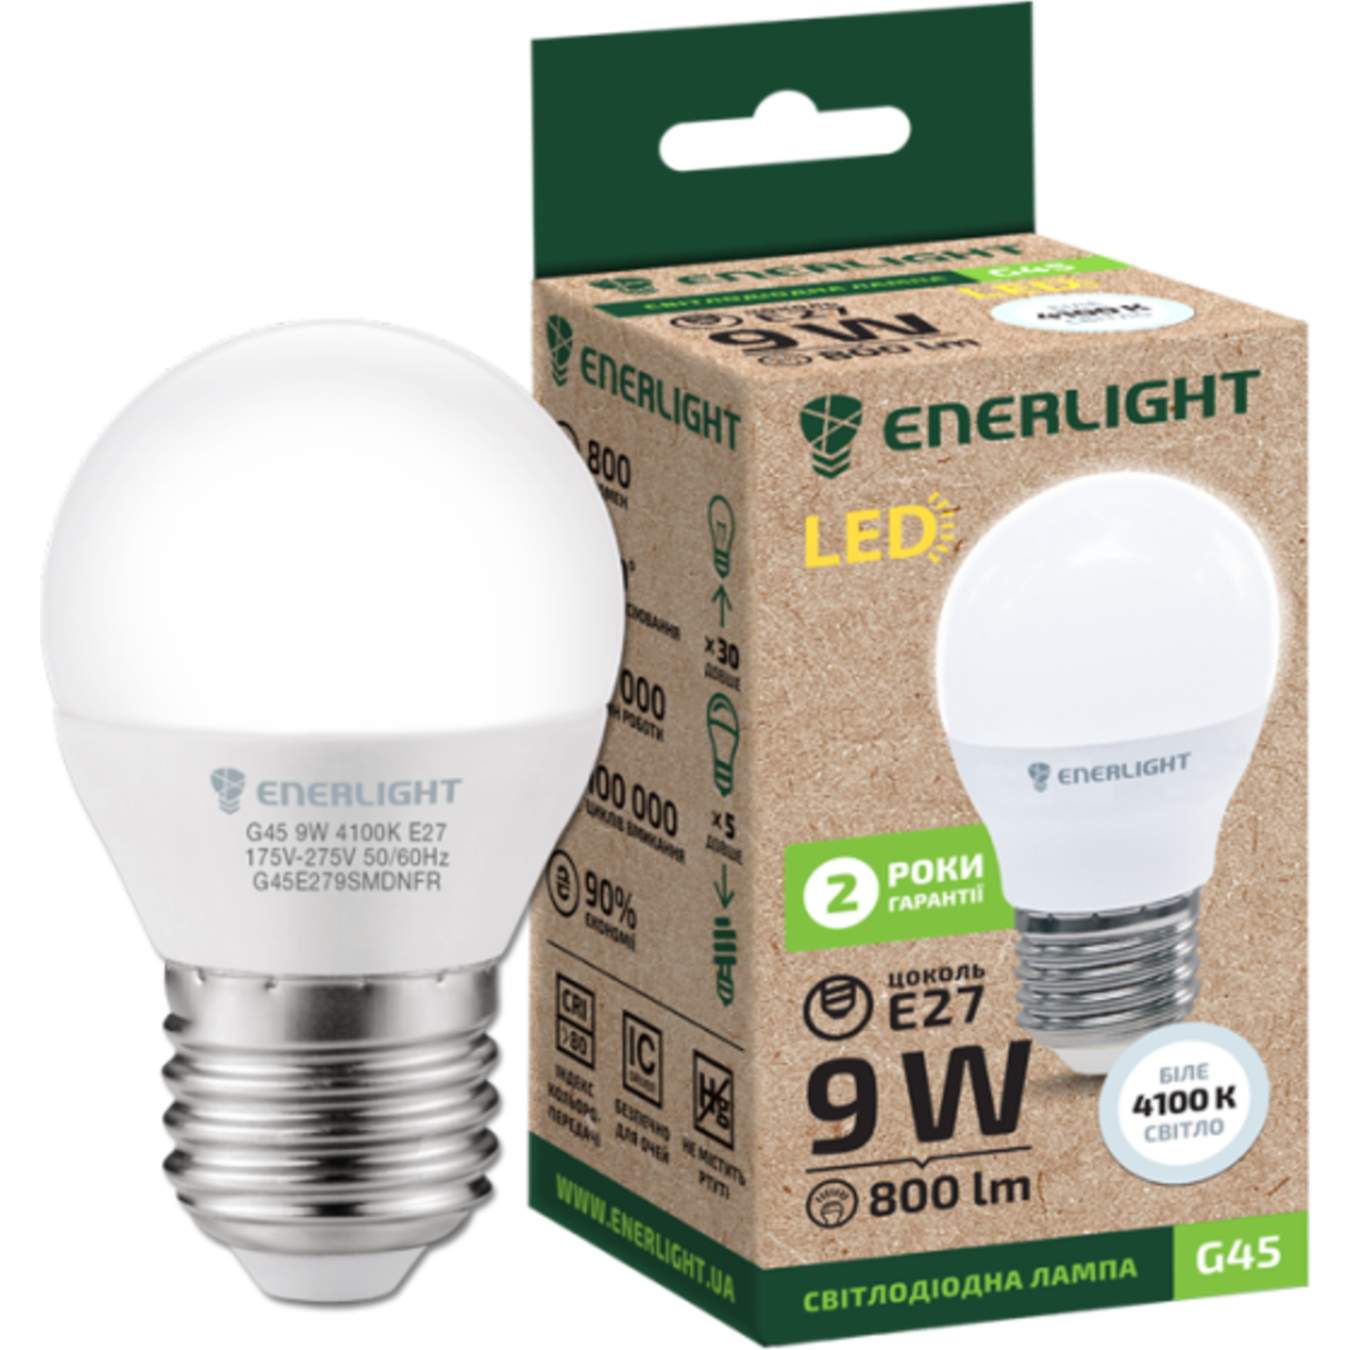 LED lamp ENERLIGHT G45 9W 4100K E27 2